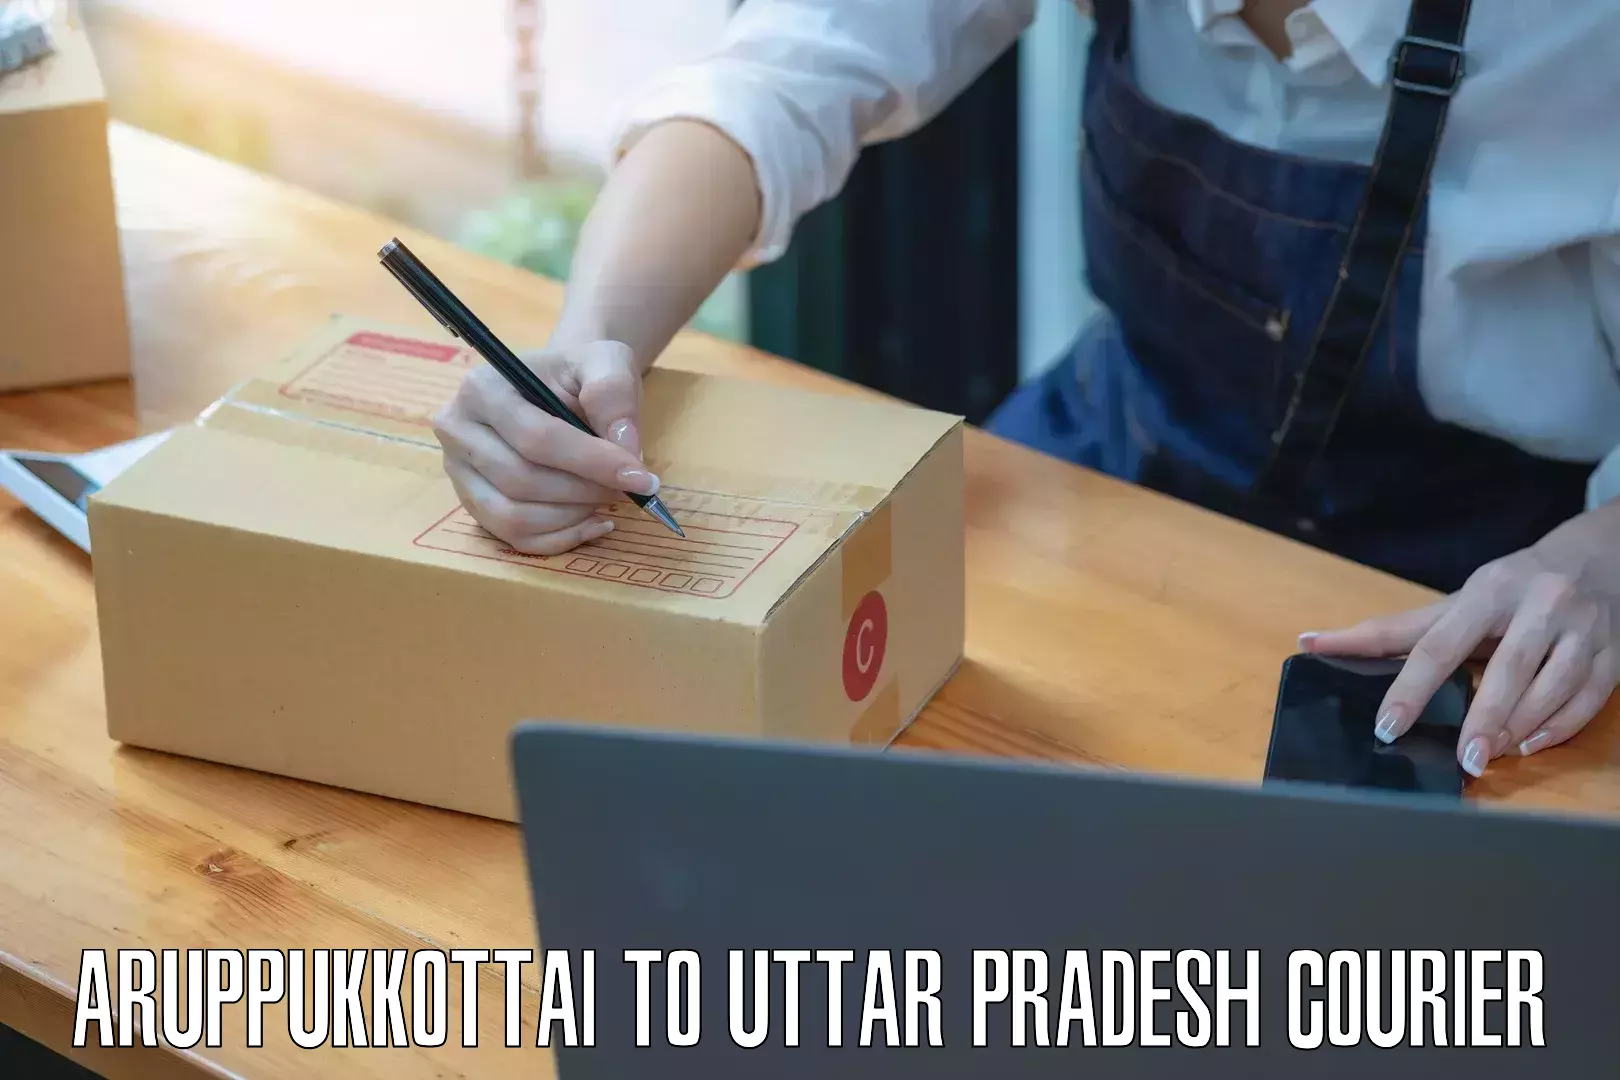 24-hour courier services Aruppukkottai to Uttar Pradesh